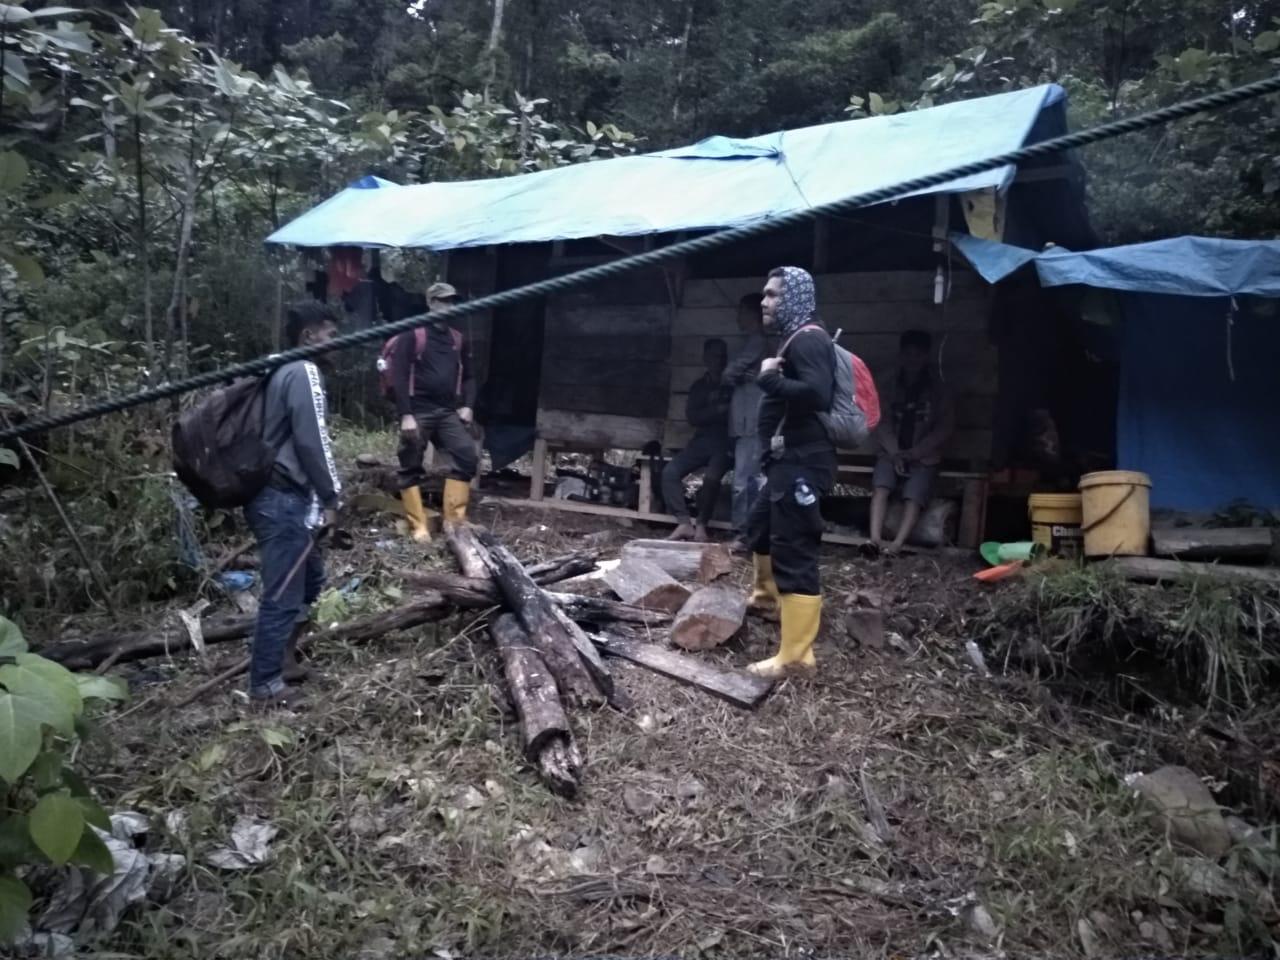 Polda Aceh Gerebek Tambang Emas Ilegal di Pidie, Satu Tersangka Ditangkap